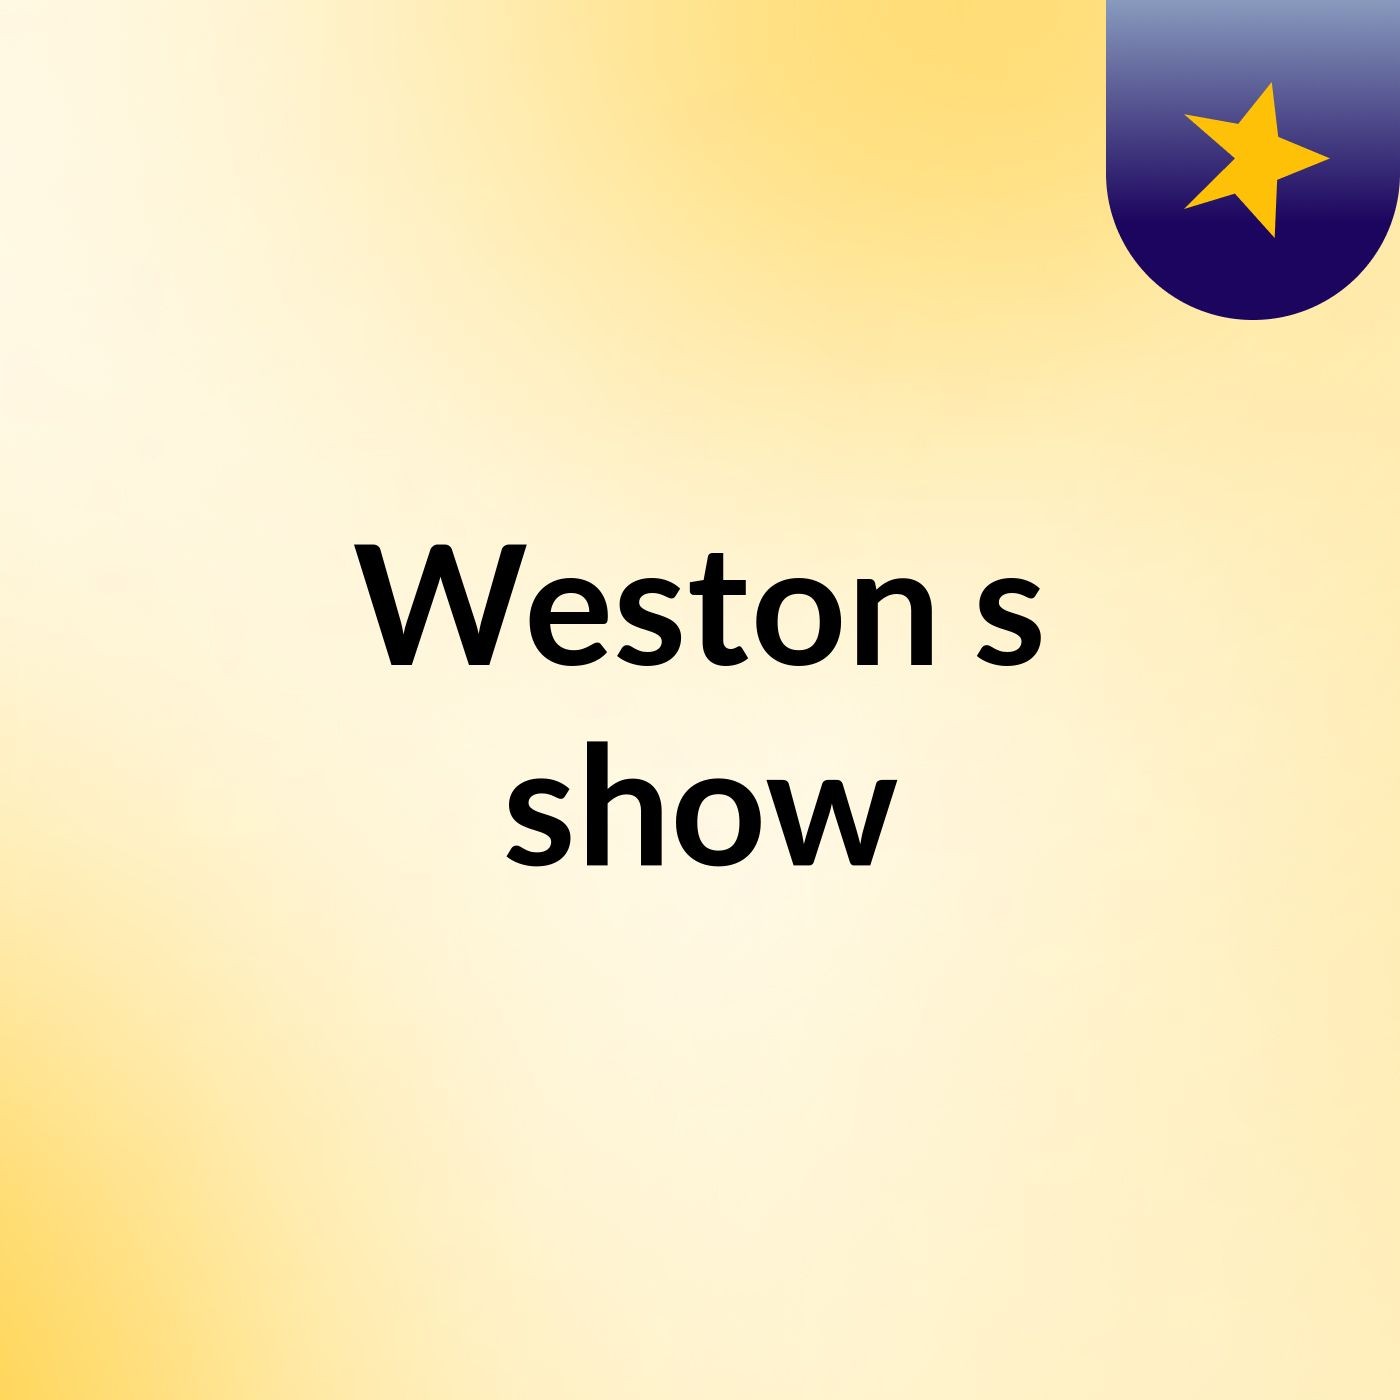 Weston's show